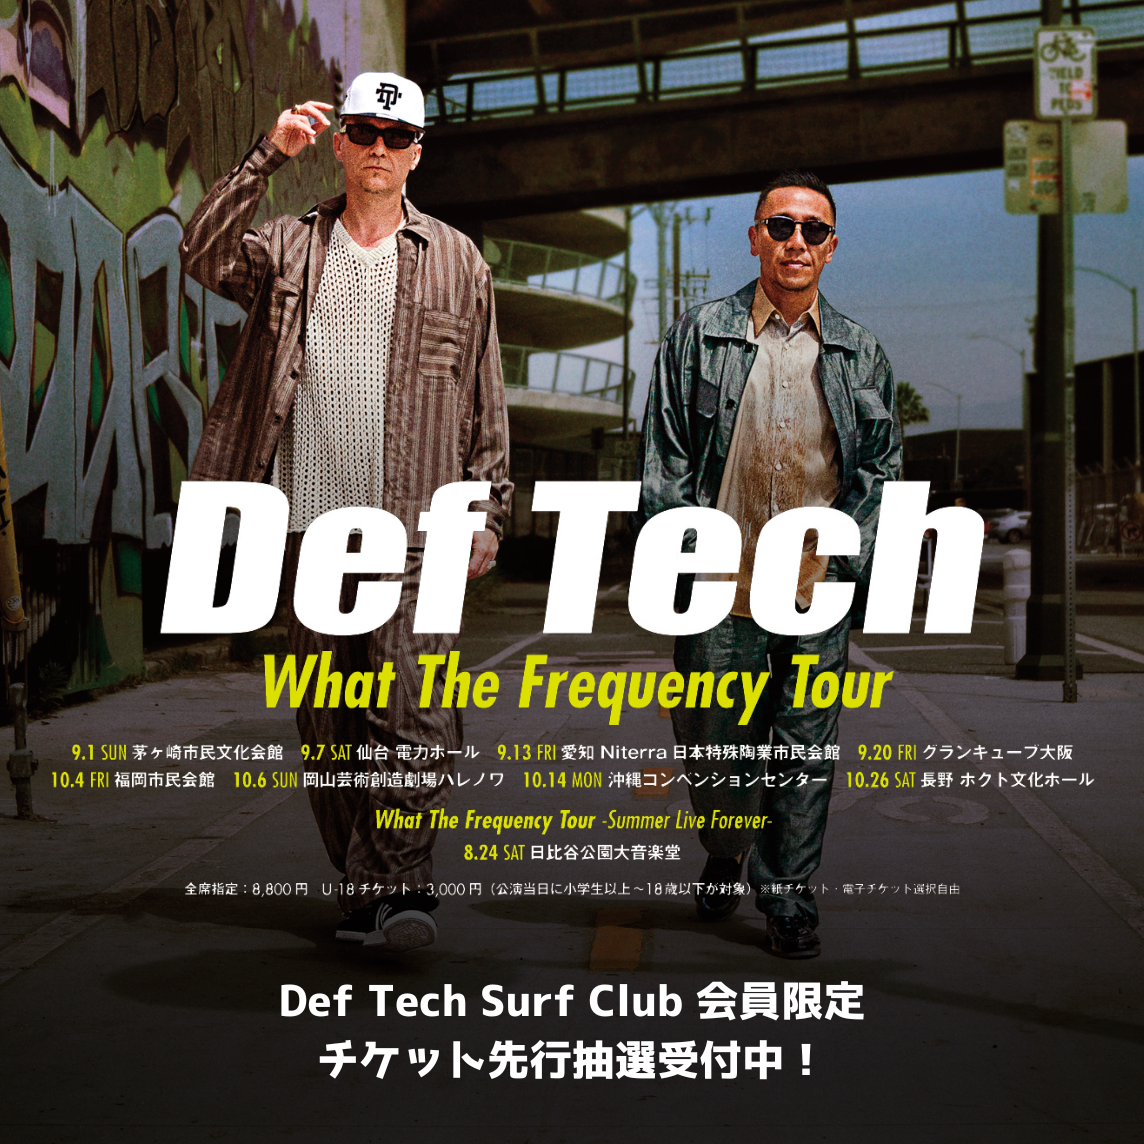 Def Tech official website